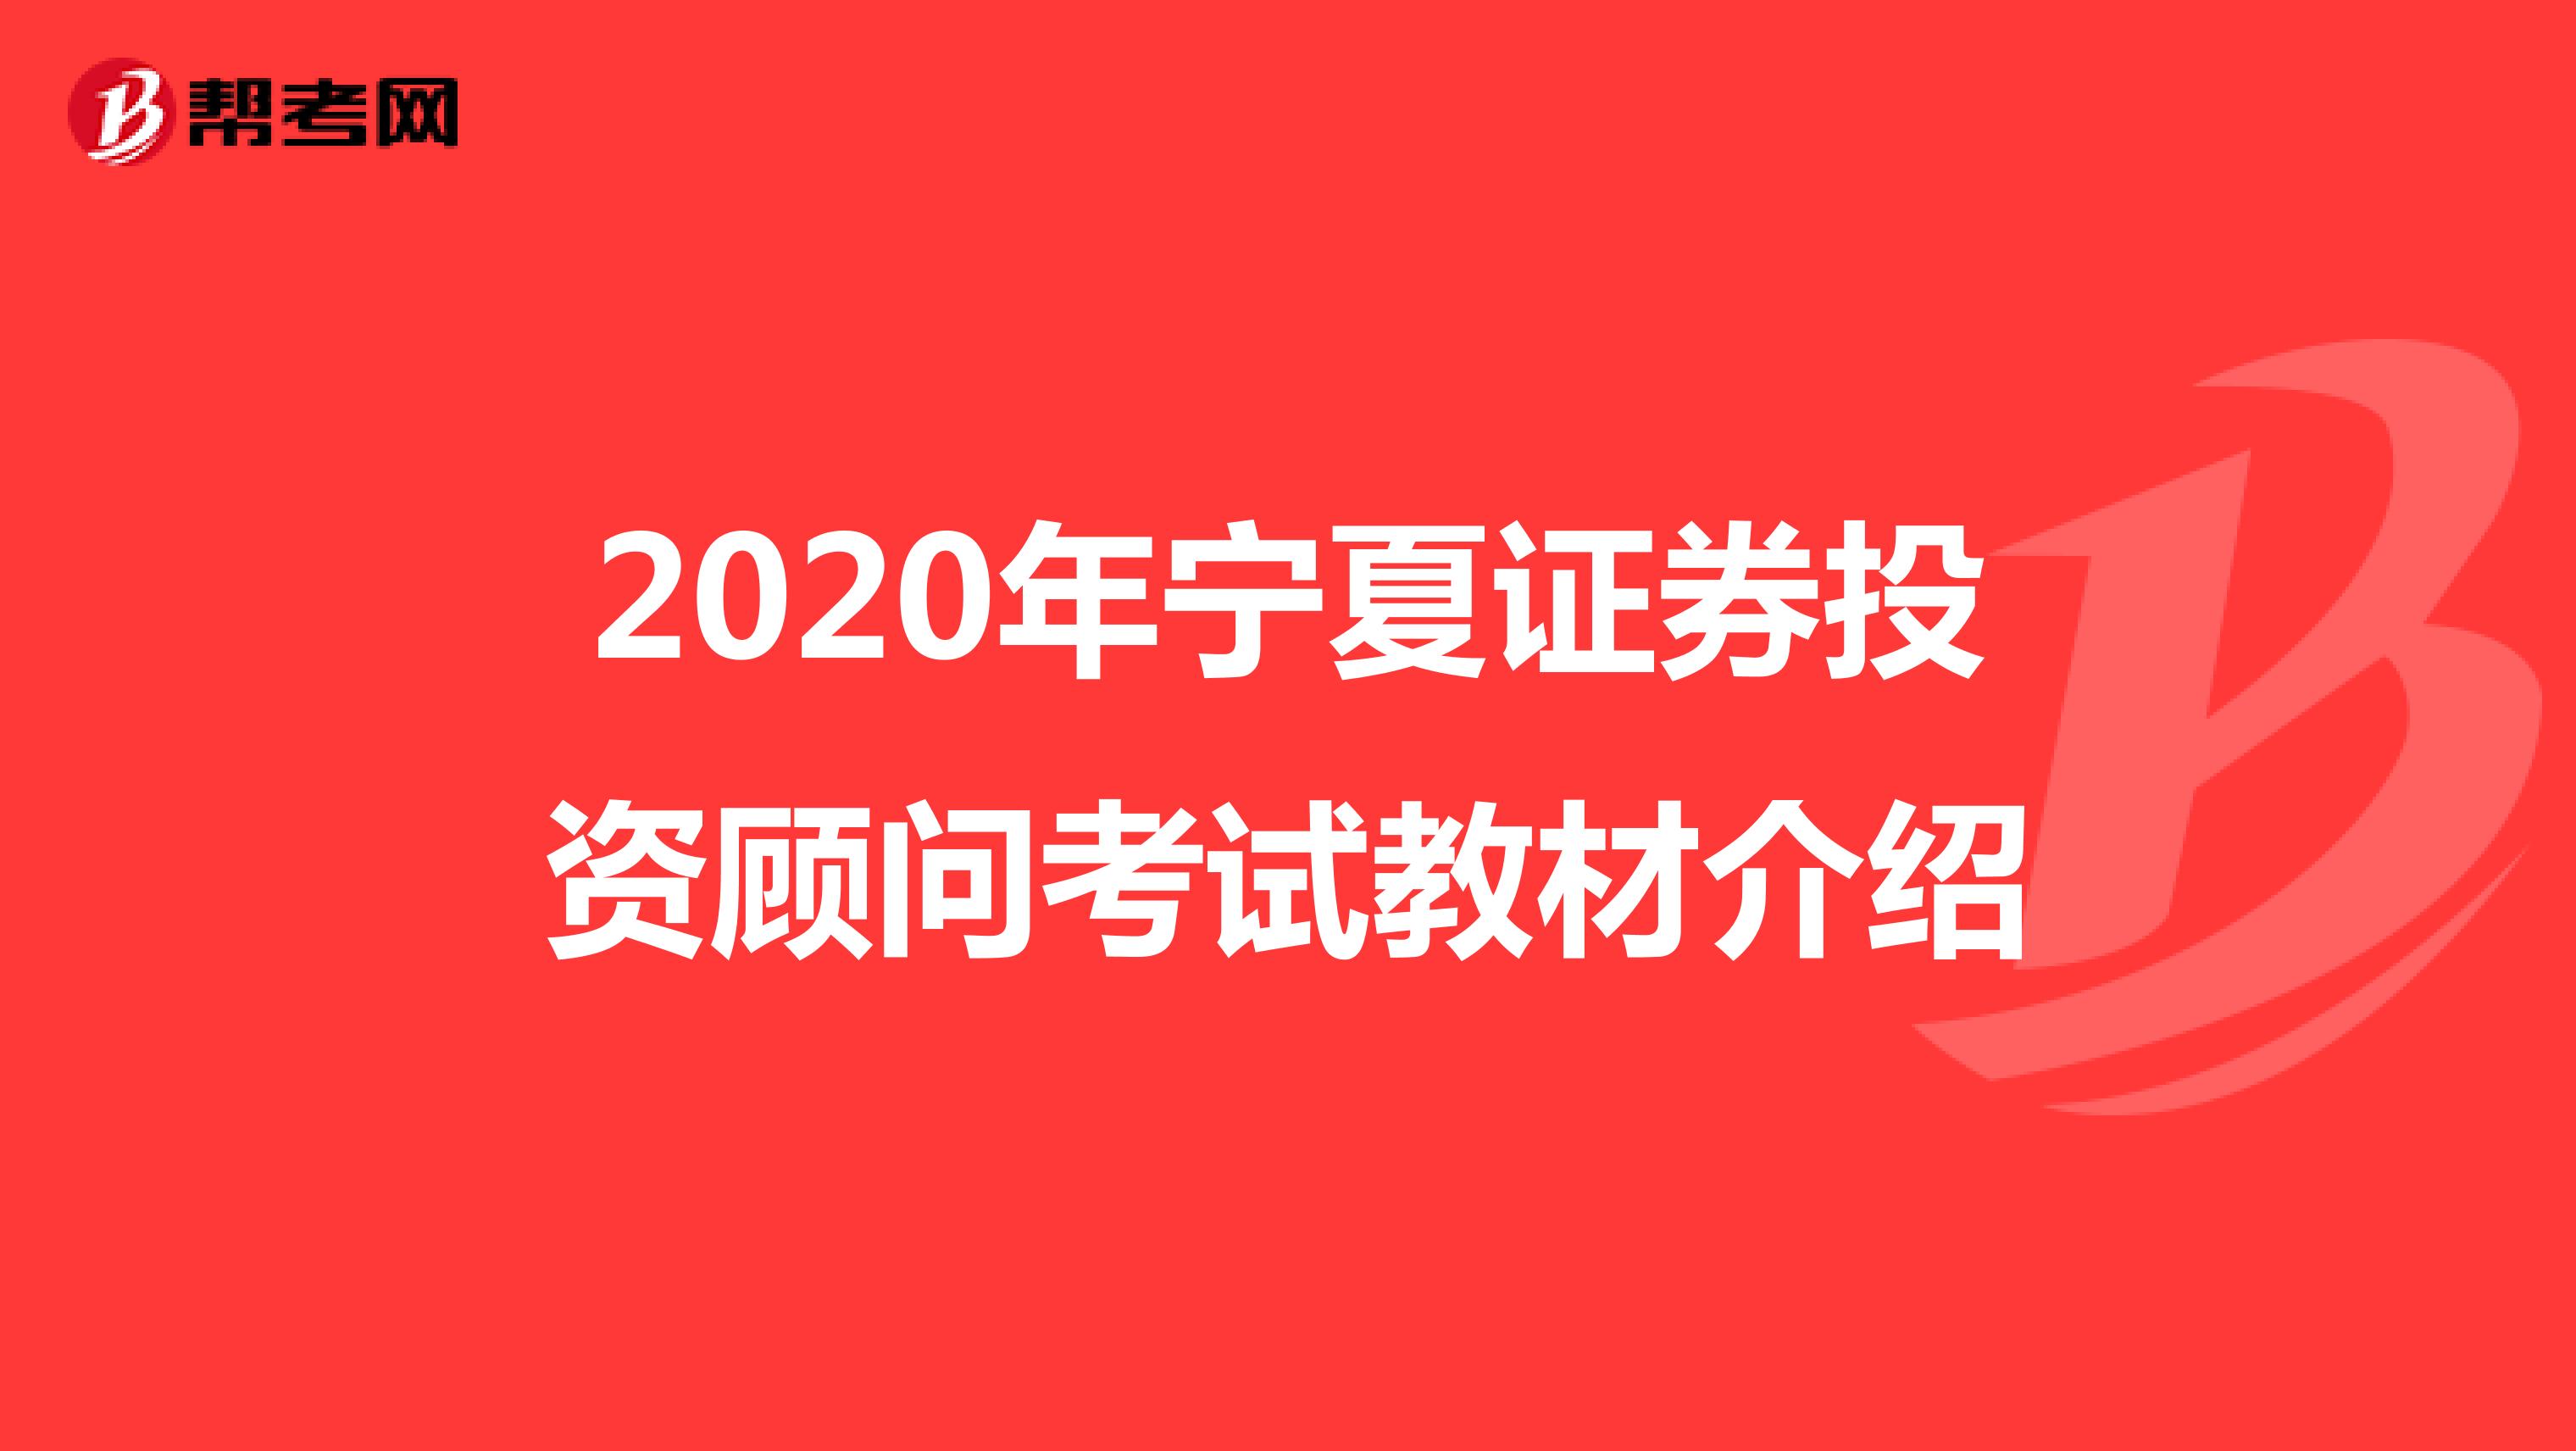 2020年宁夏证券投资顾问考试教材介绍